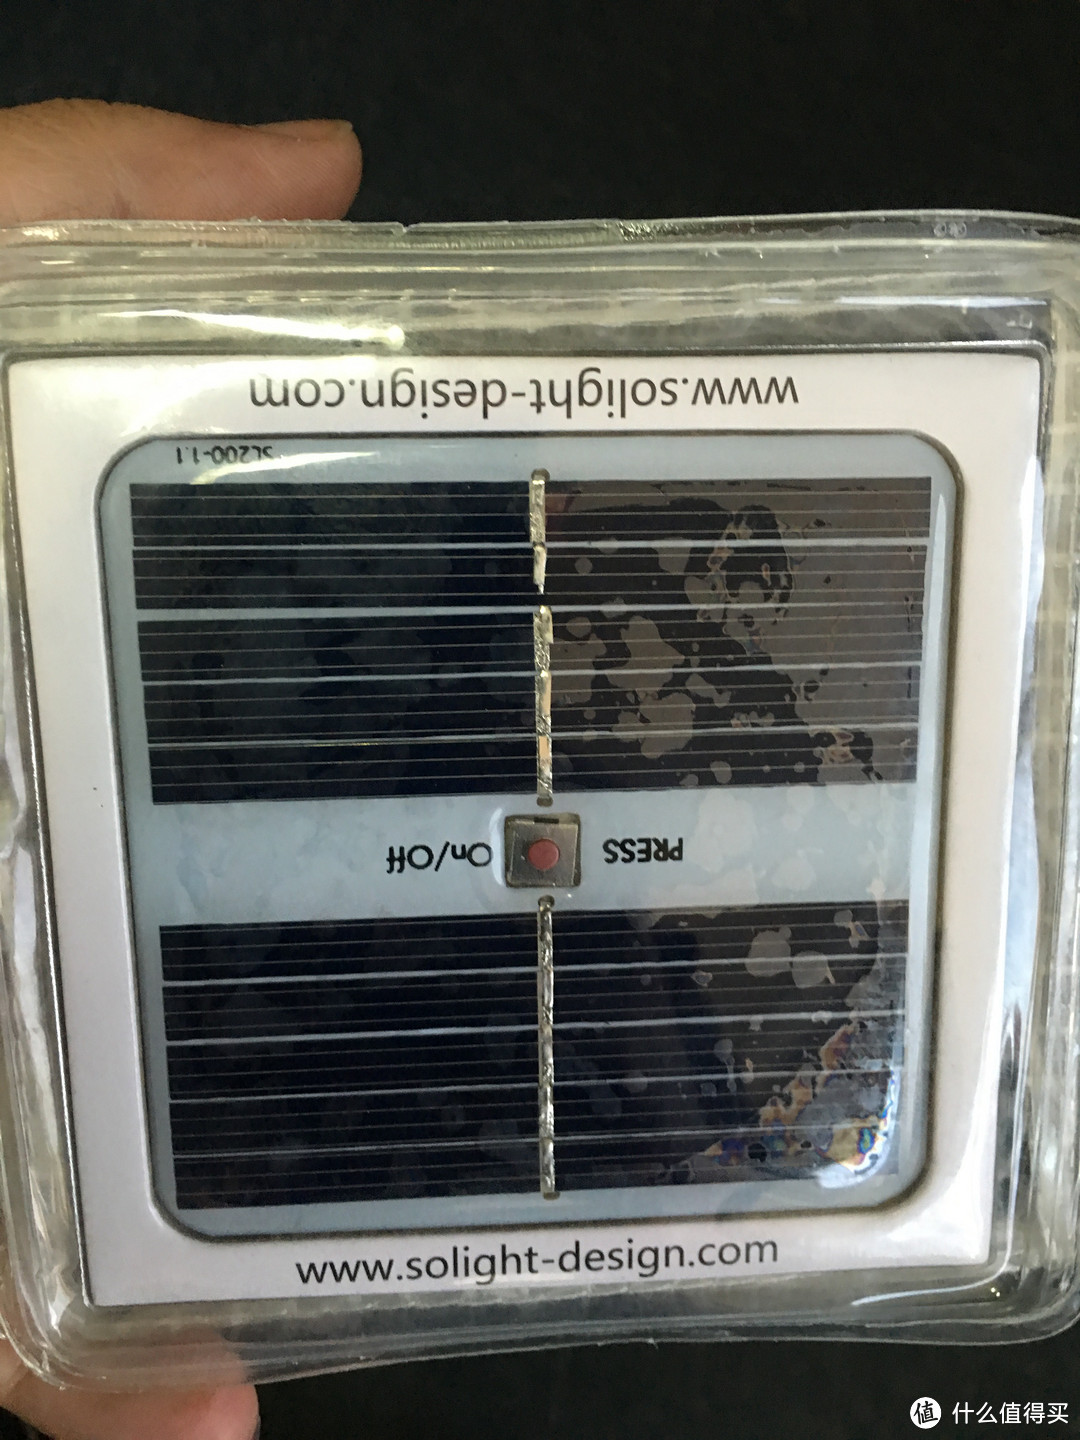 小而独特——Solarpuff 太阳能灯